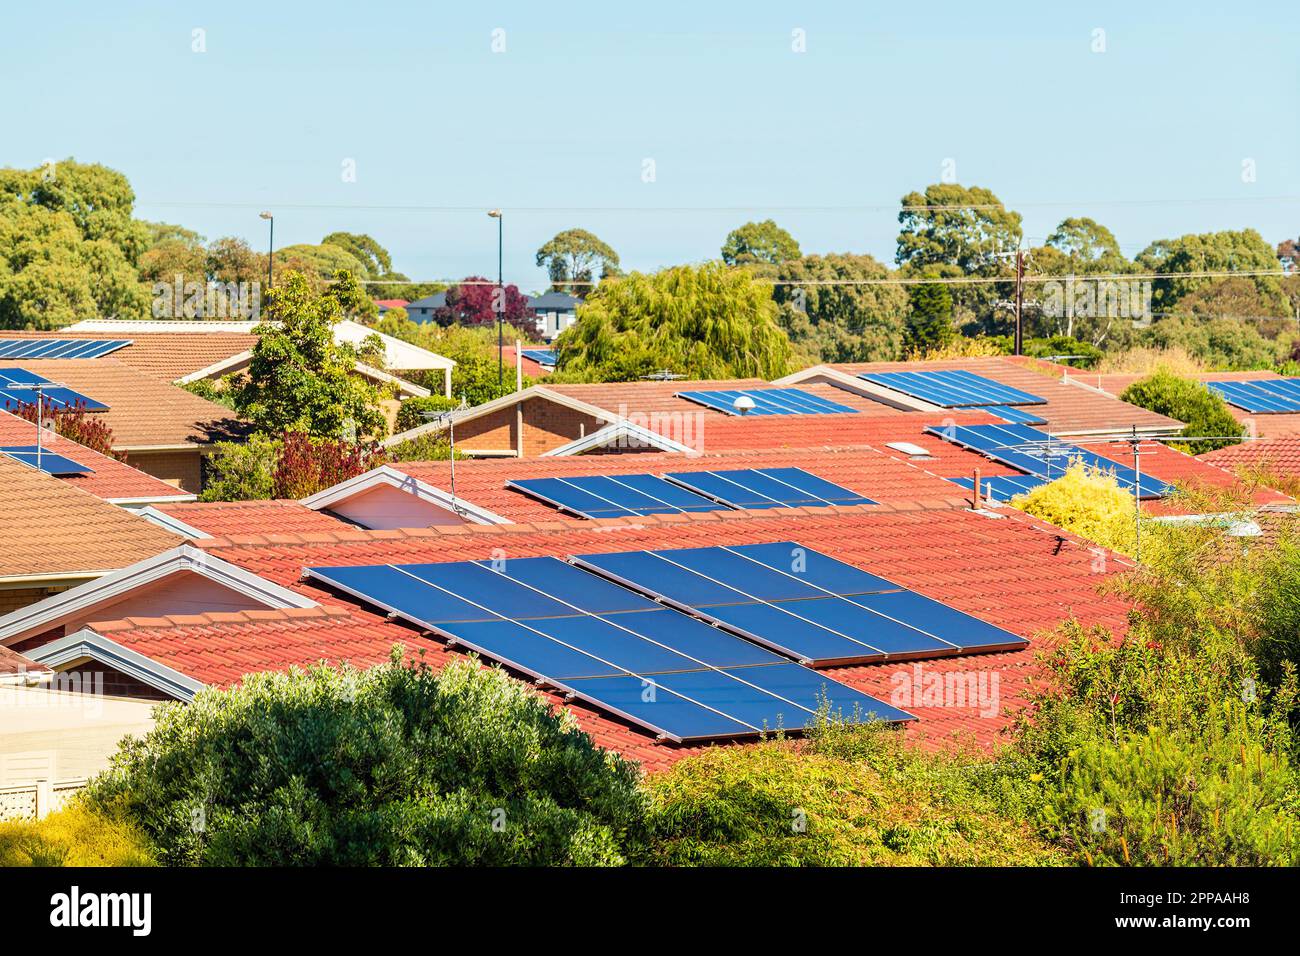 Vorort Adelaide mit Hausdächern, die von Solarpaneelen bedeckt sind, an einem Tag, Südaustralien Stockfoto